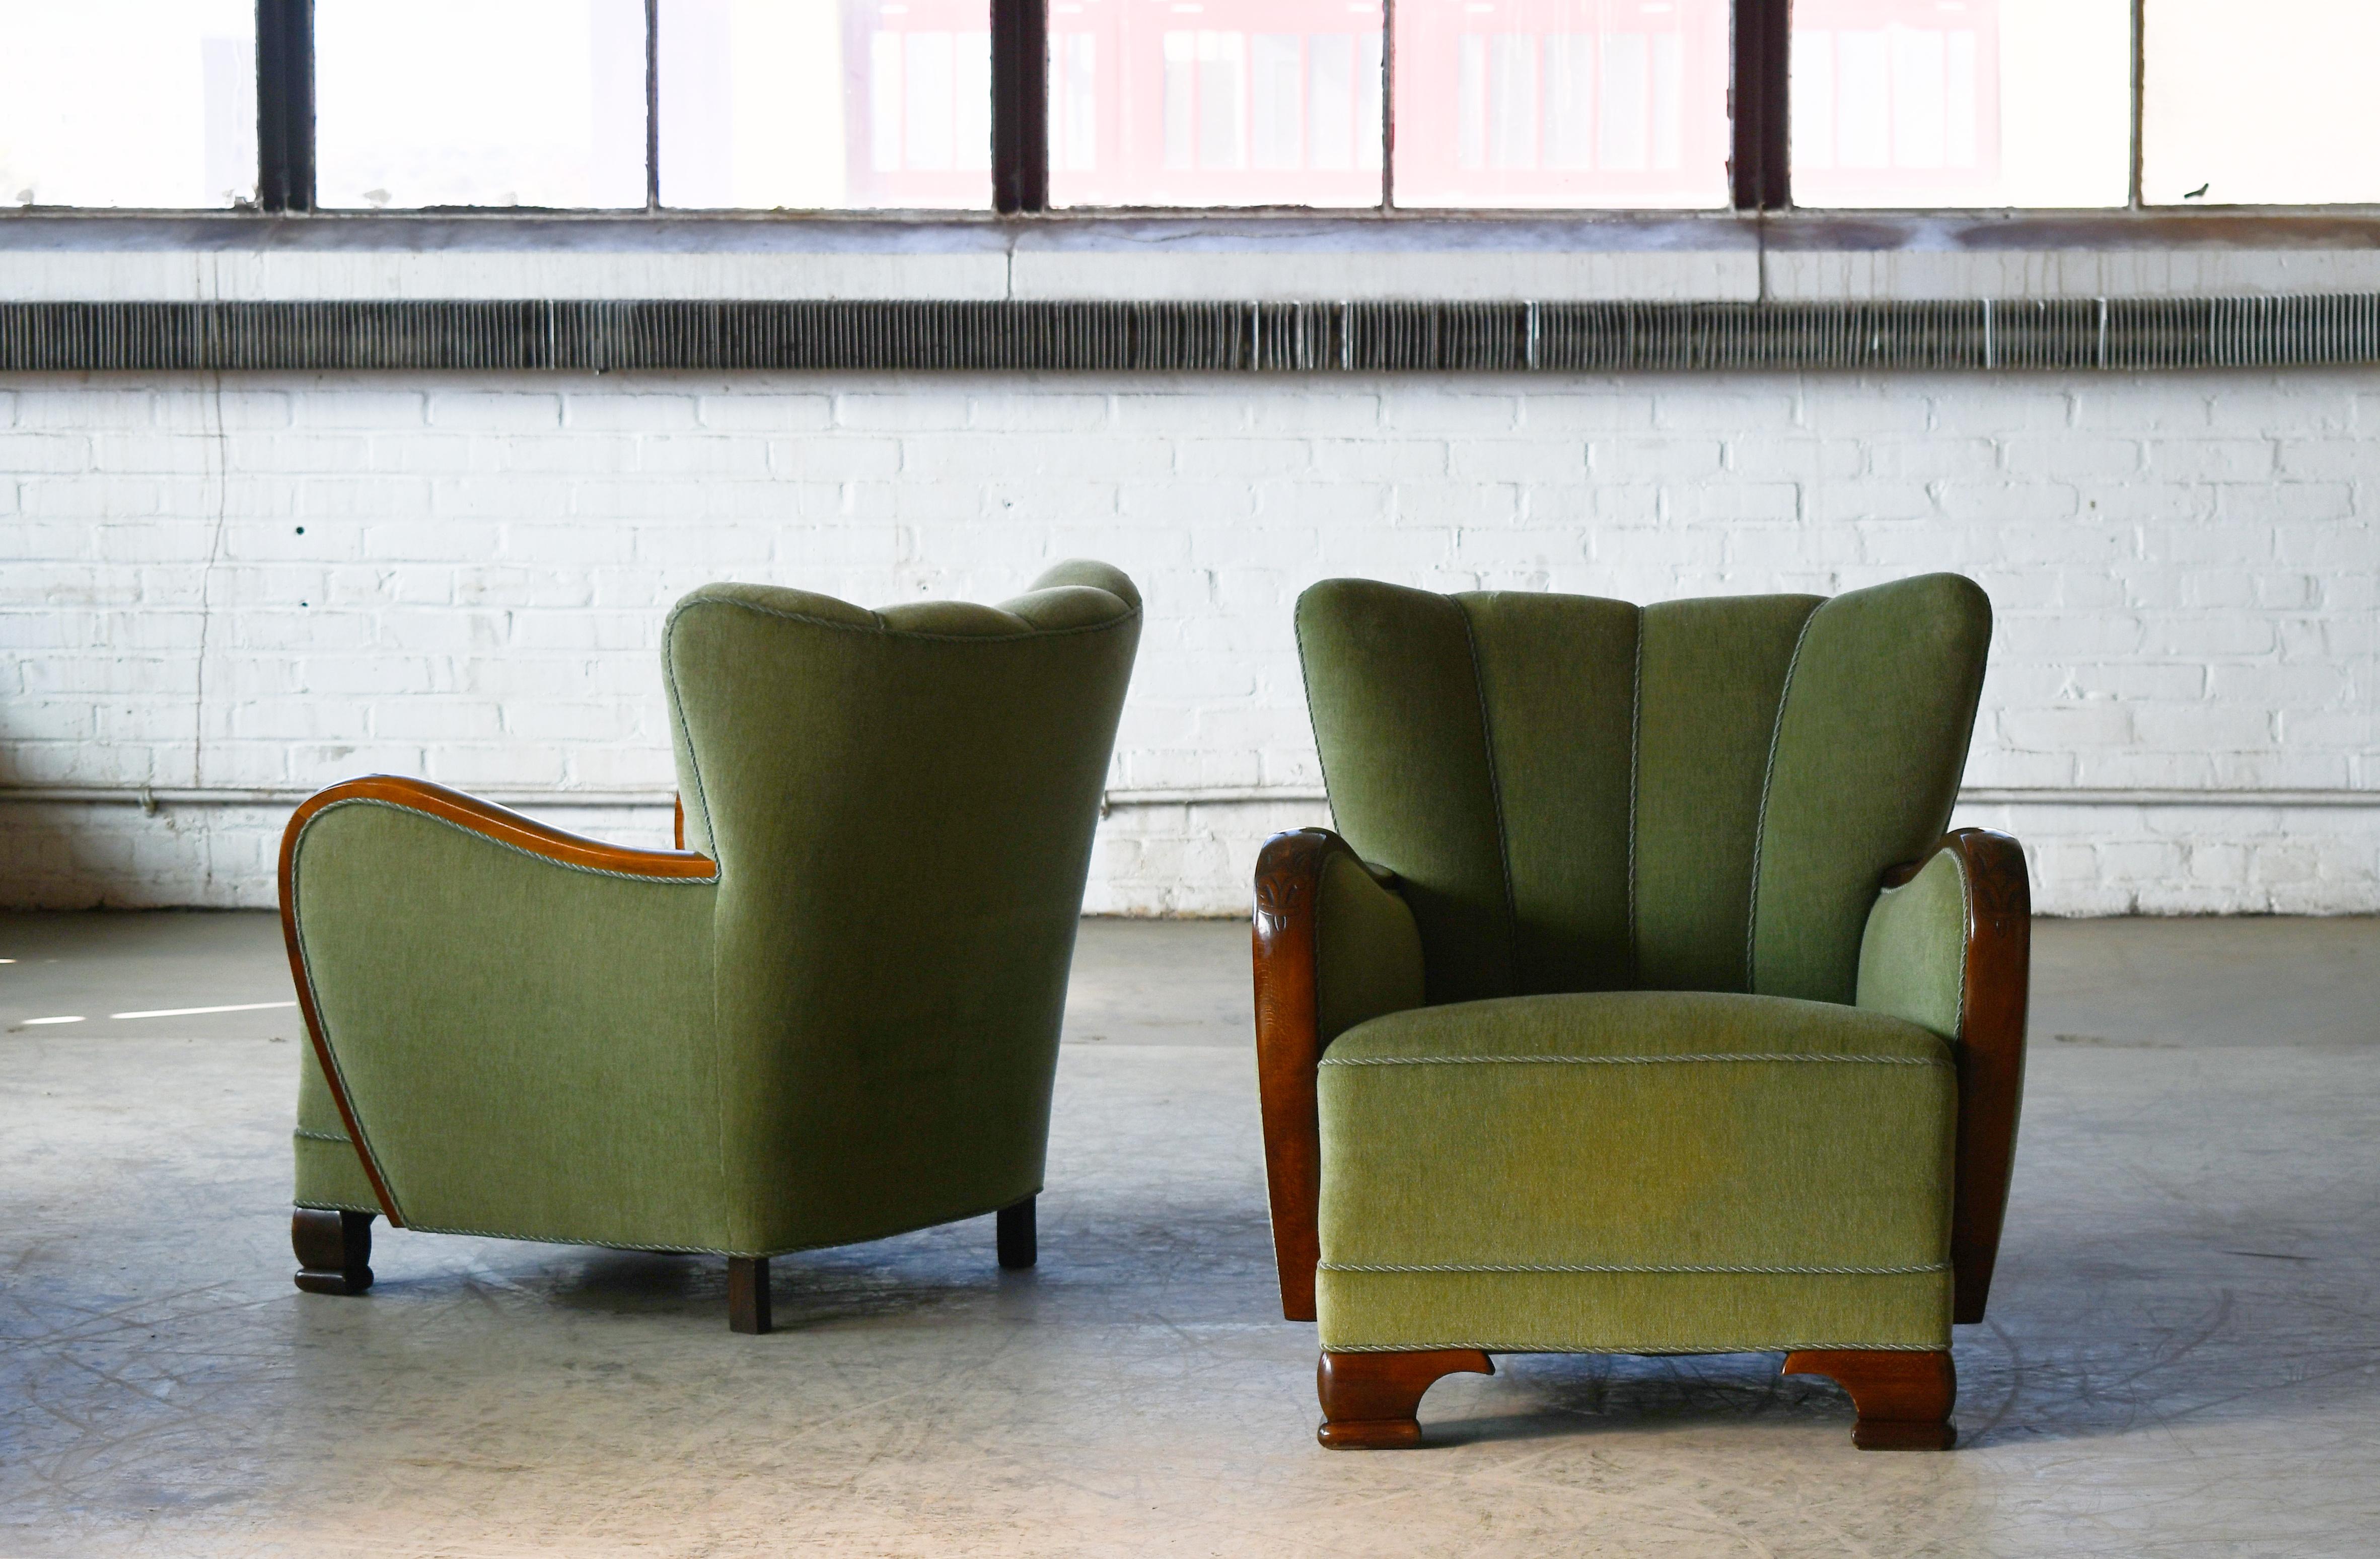 Super charmantes Paar Sessel aus den 1940er Jahren im Stil von Mogens Lassen mit einer sehr skulpturalen, organischen Form und harmonischen Proportionen. Vielseitig und sehr gut geeignet für einen kleineren Raum, der eine stärkere Aussage braucht.